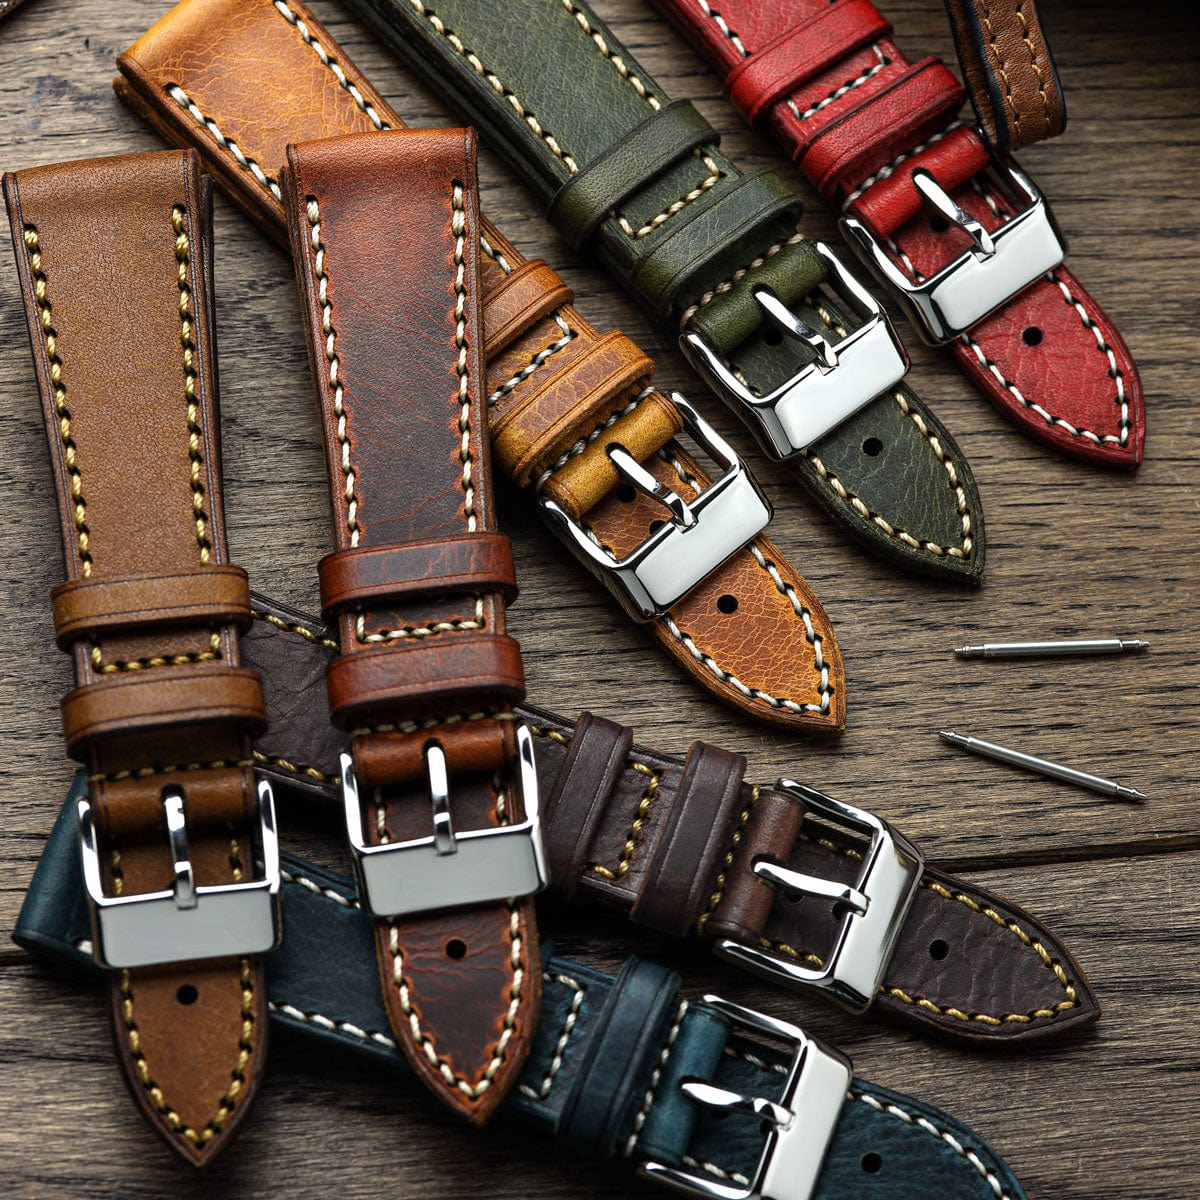 WatchGecko Hatherley Handmade Leather Watch Strap - Bone Wax Brown